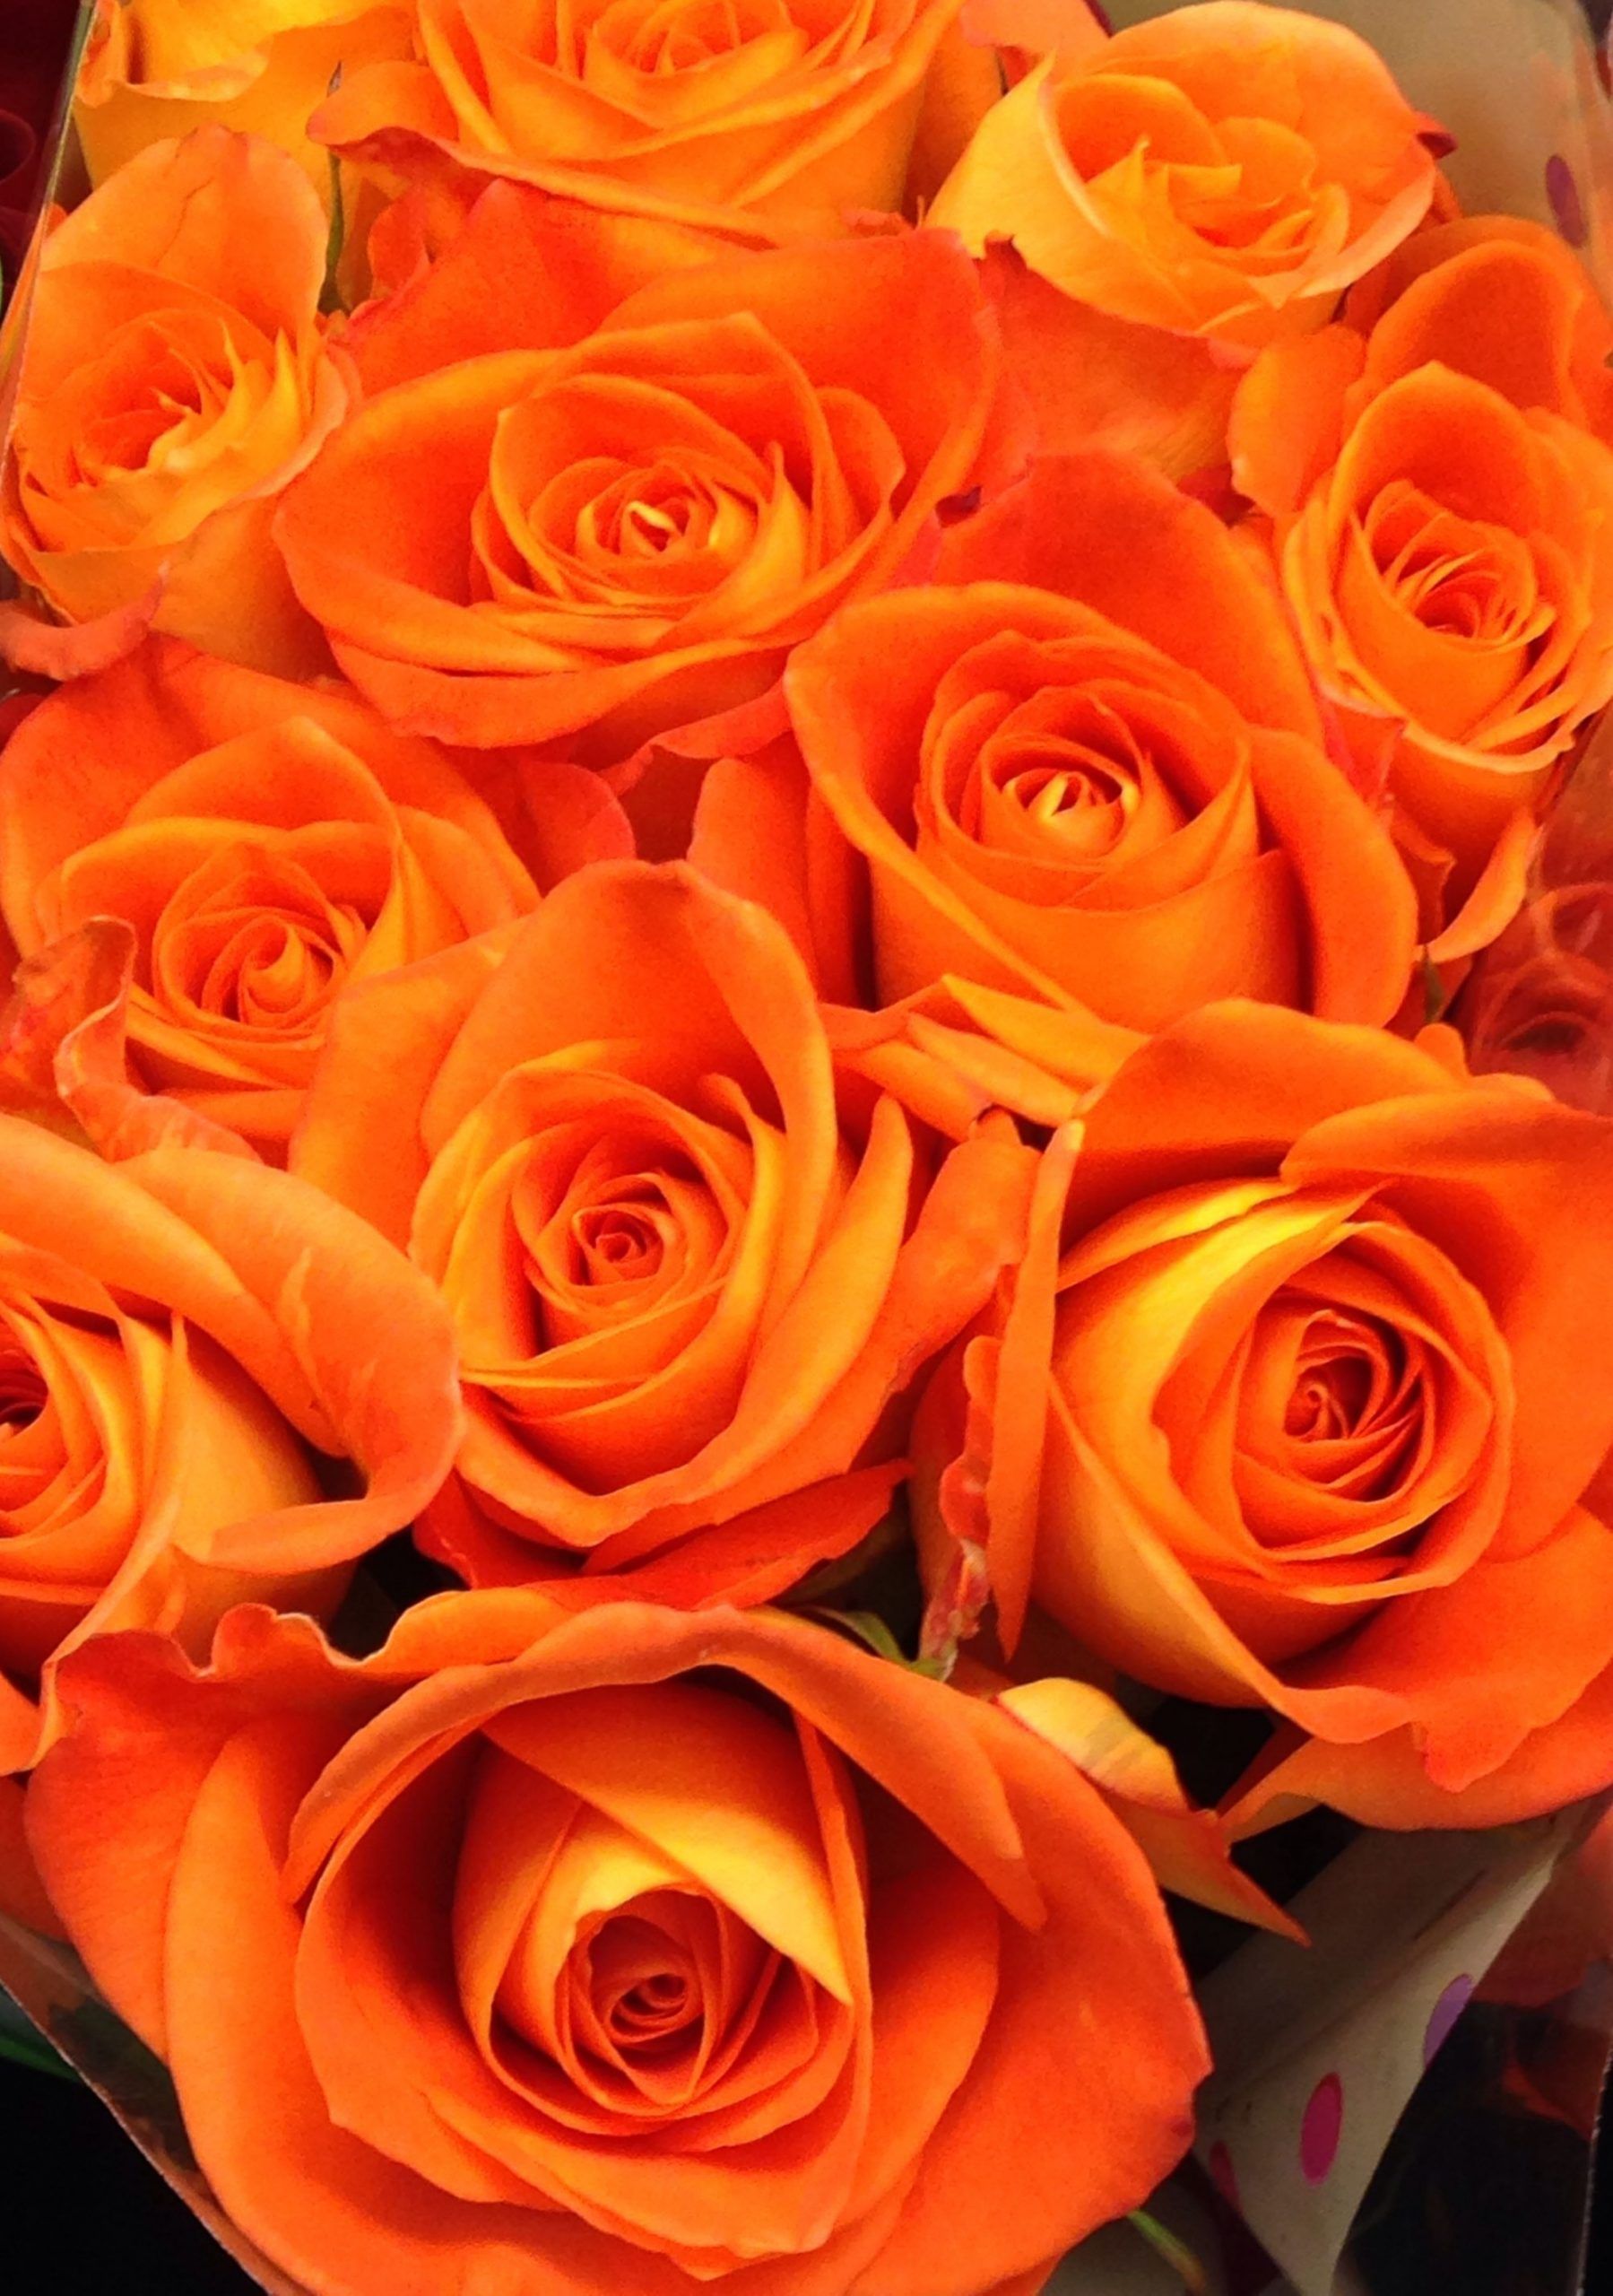 A bouquet of orange roses. - Orange